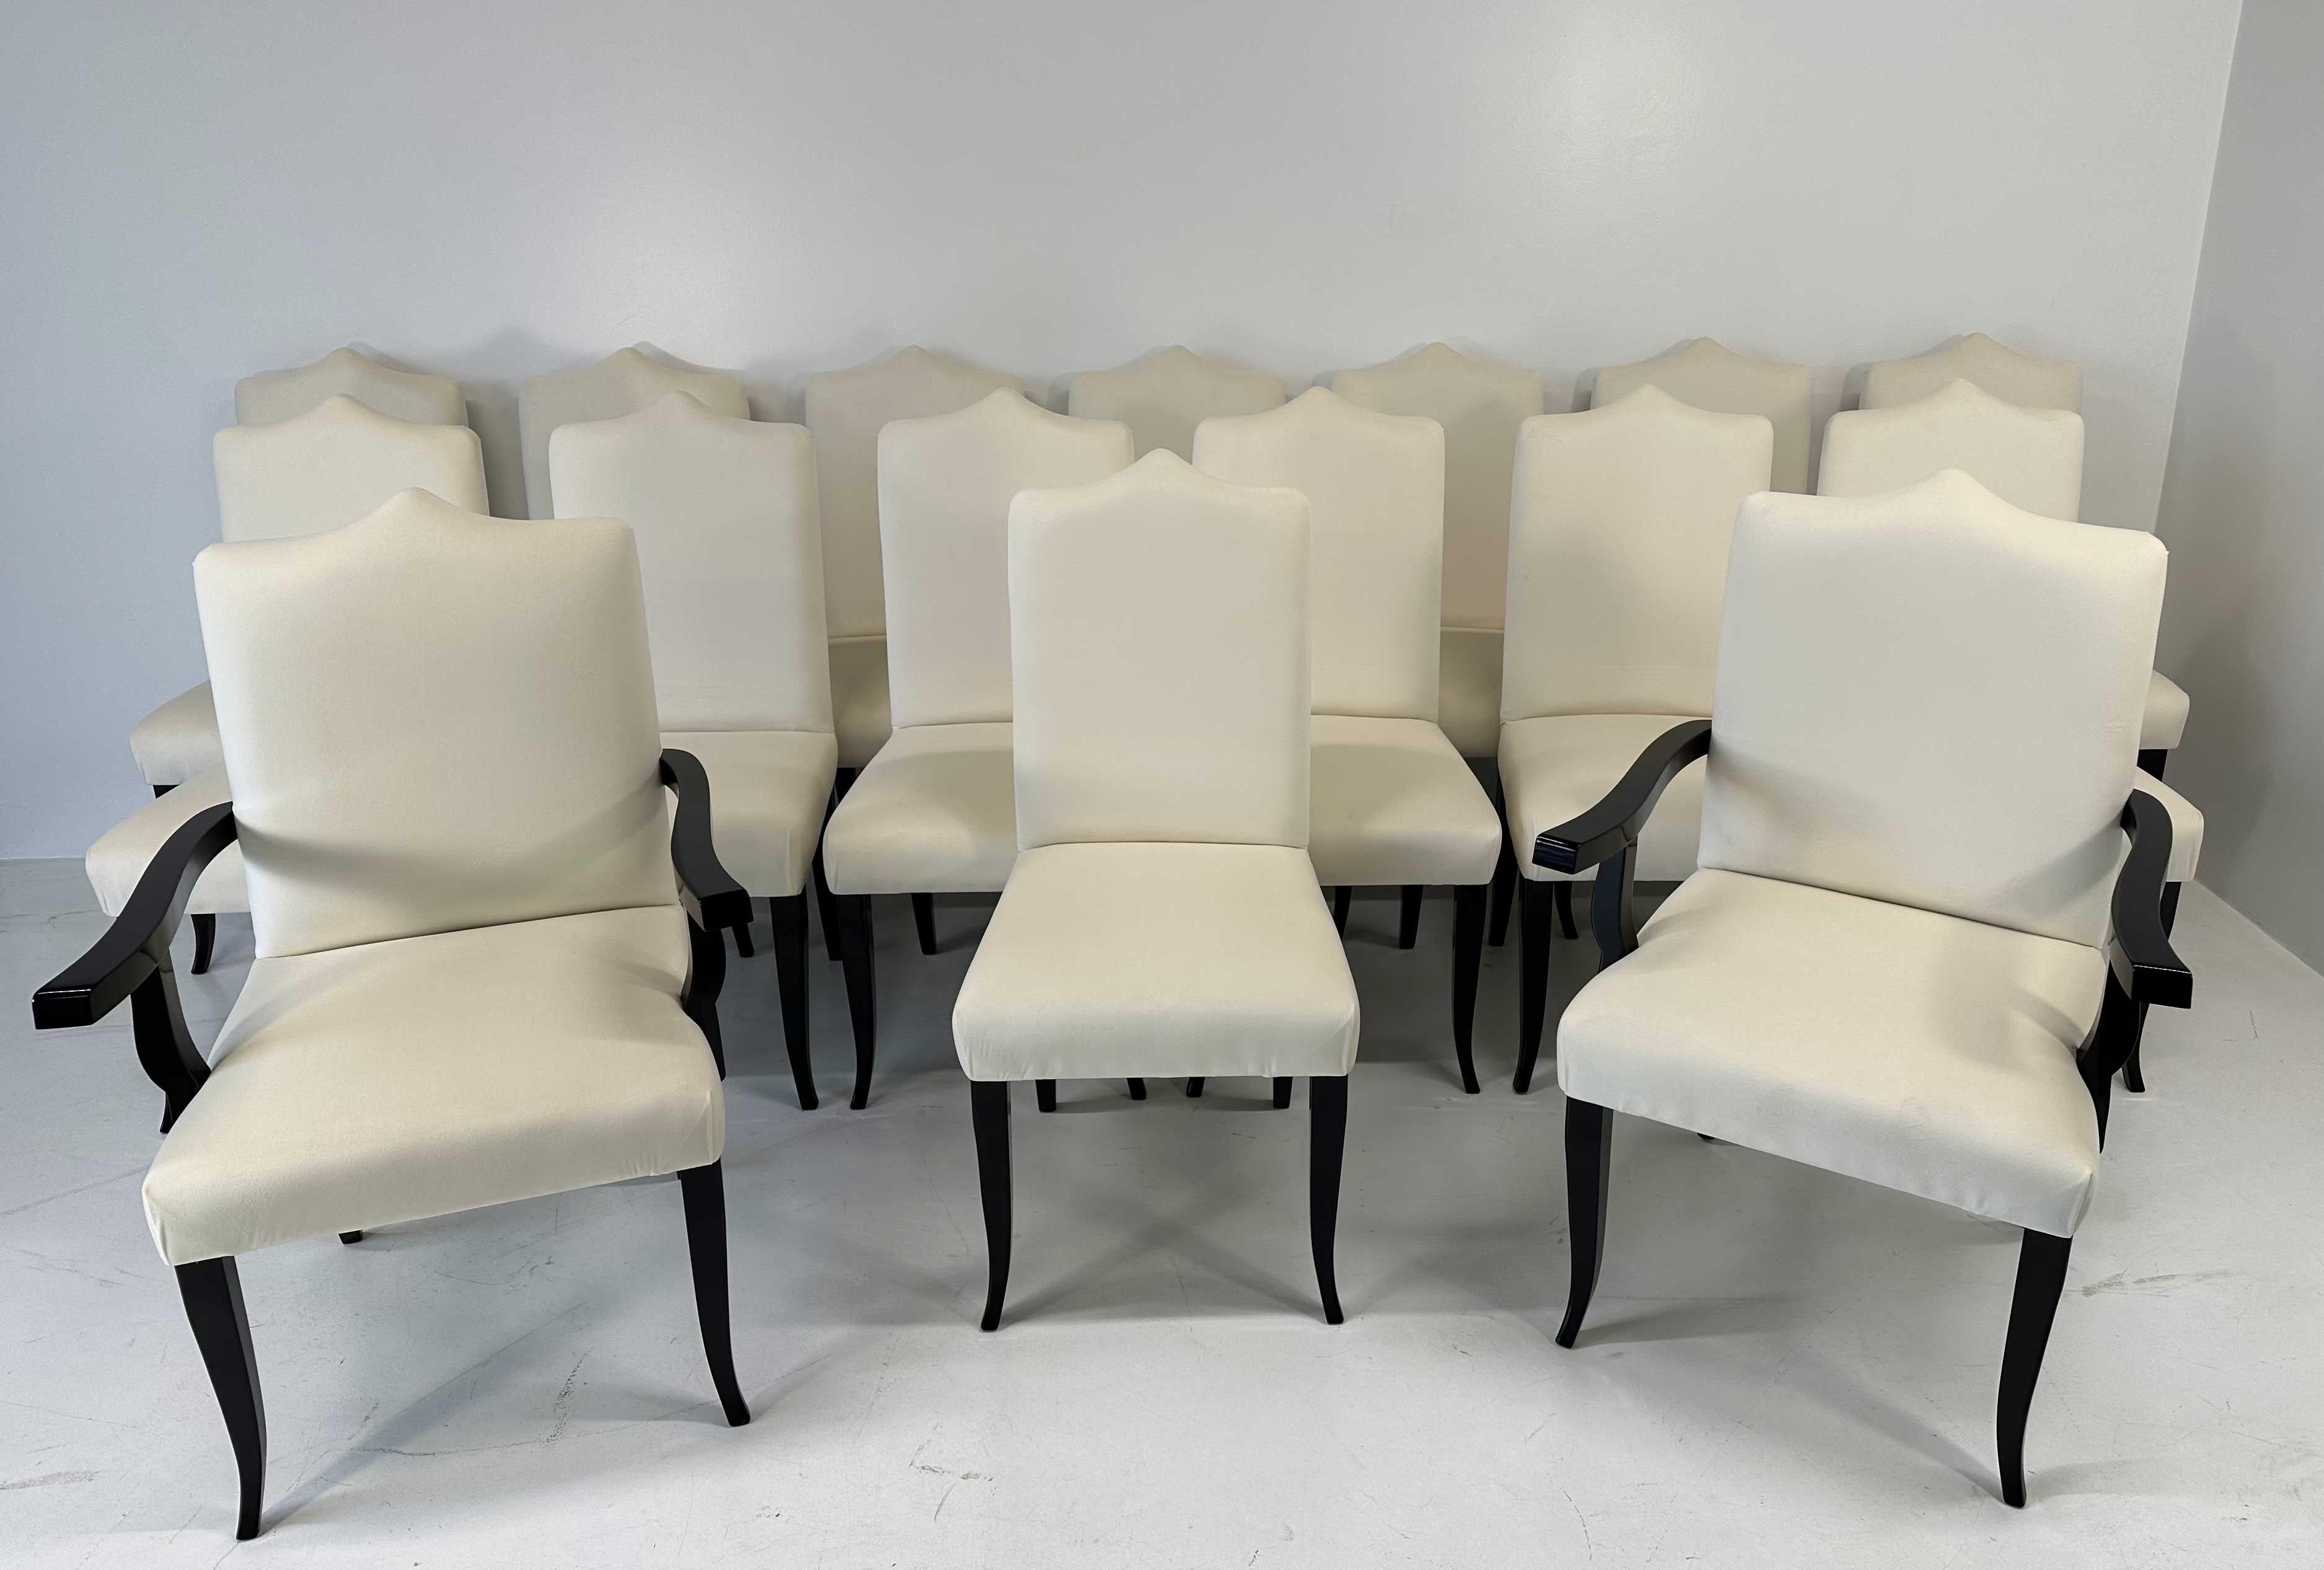 Cet ensemble de 16 chaises de style Art Déco est en fait composé de 14 chaises et de 2 trônes (chaises avec accoudoirs pour les têtes de table). Ils ont été produits dans le nord de l'Italie dans les années 1980. 
Ils sont entièrement recouverts